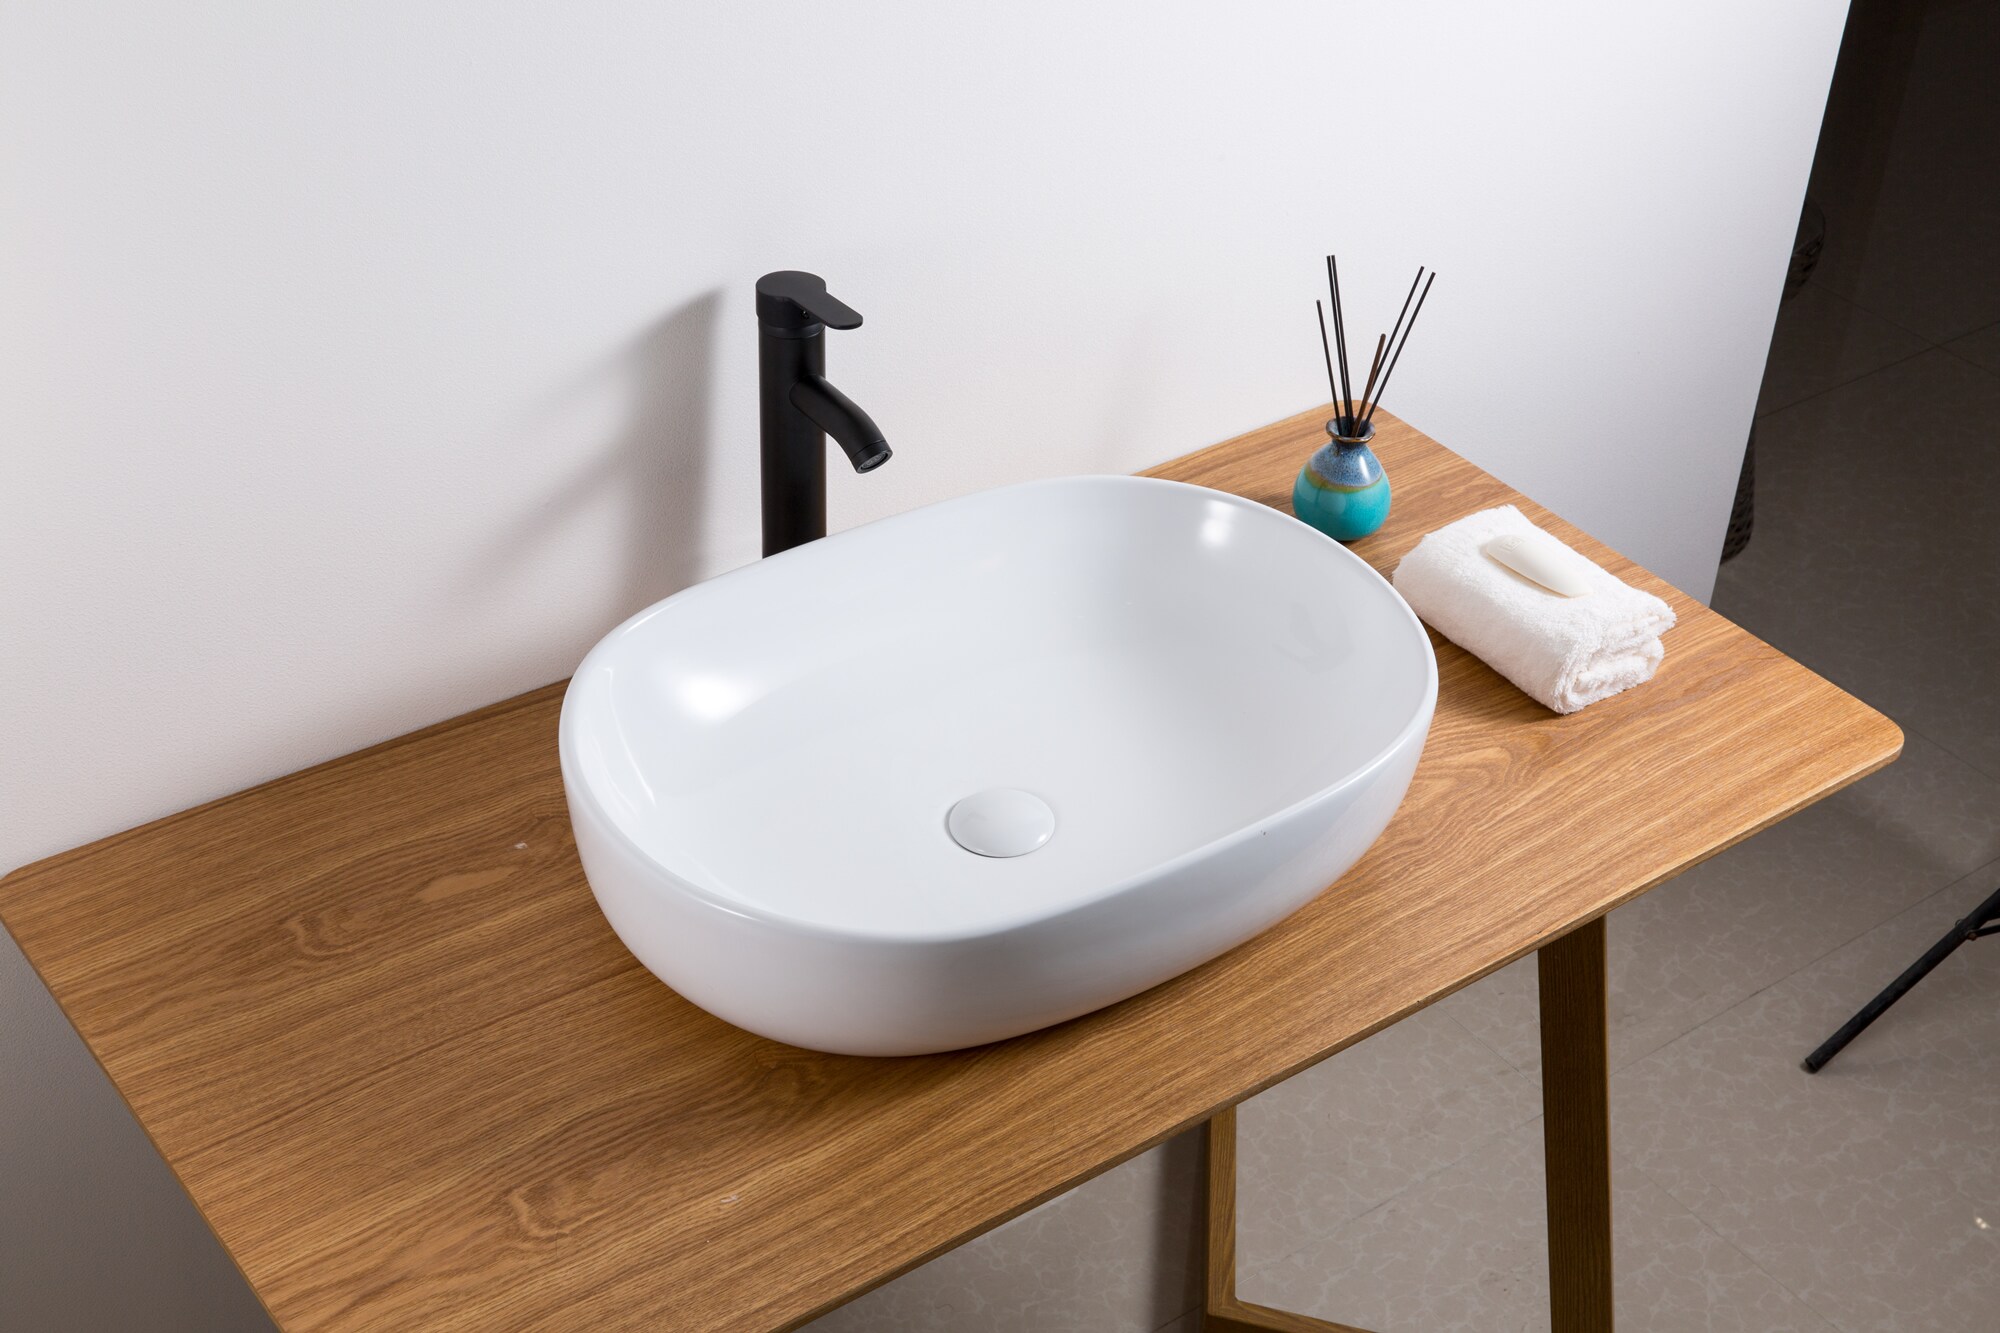 Ruvati Vista White Ceramic Vessel Oval Modern Bathroom Sink (23.5-in x 16.5-in)